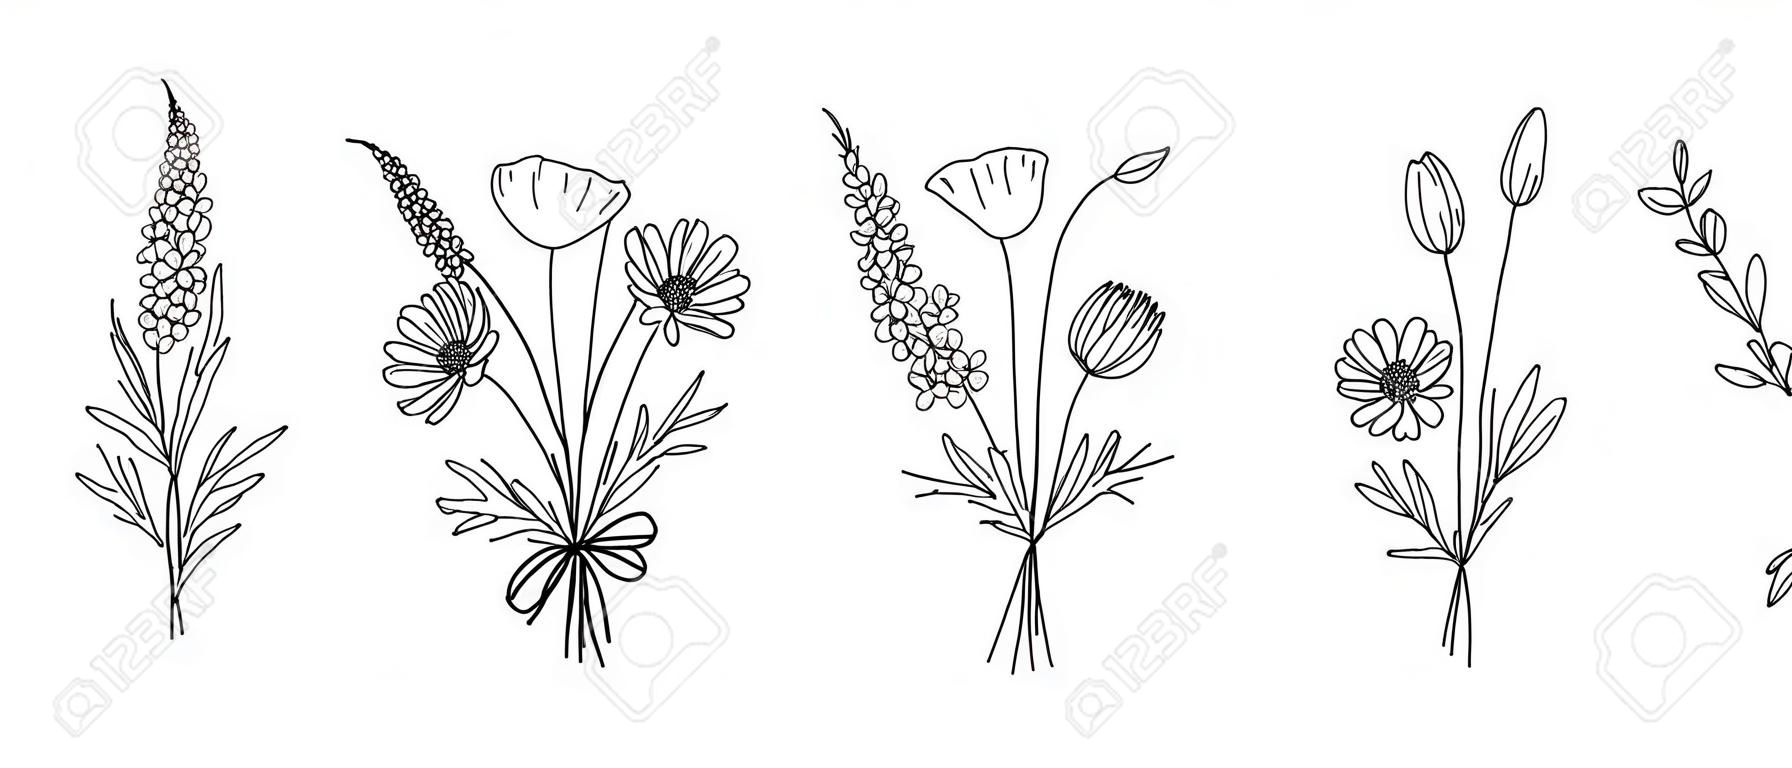 Wildflower-Strichzeichnungssträuße gesetzt. Wiesenblumen, Kräuter, Wildpflanzen, botanische handgezeichnete Elemente für Designprojekte. Vektor-Illustration.